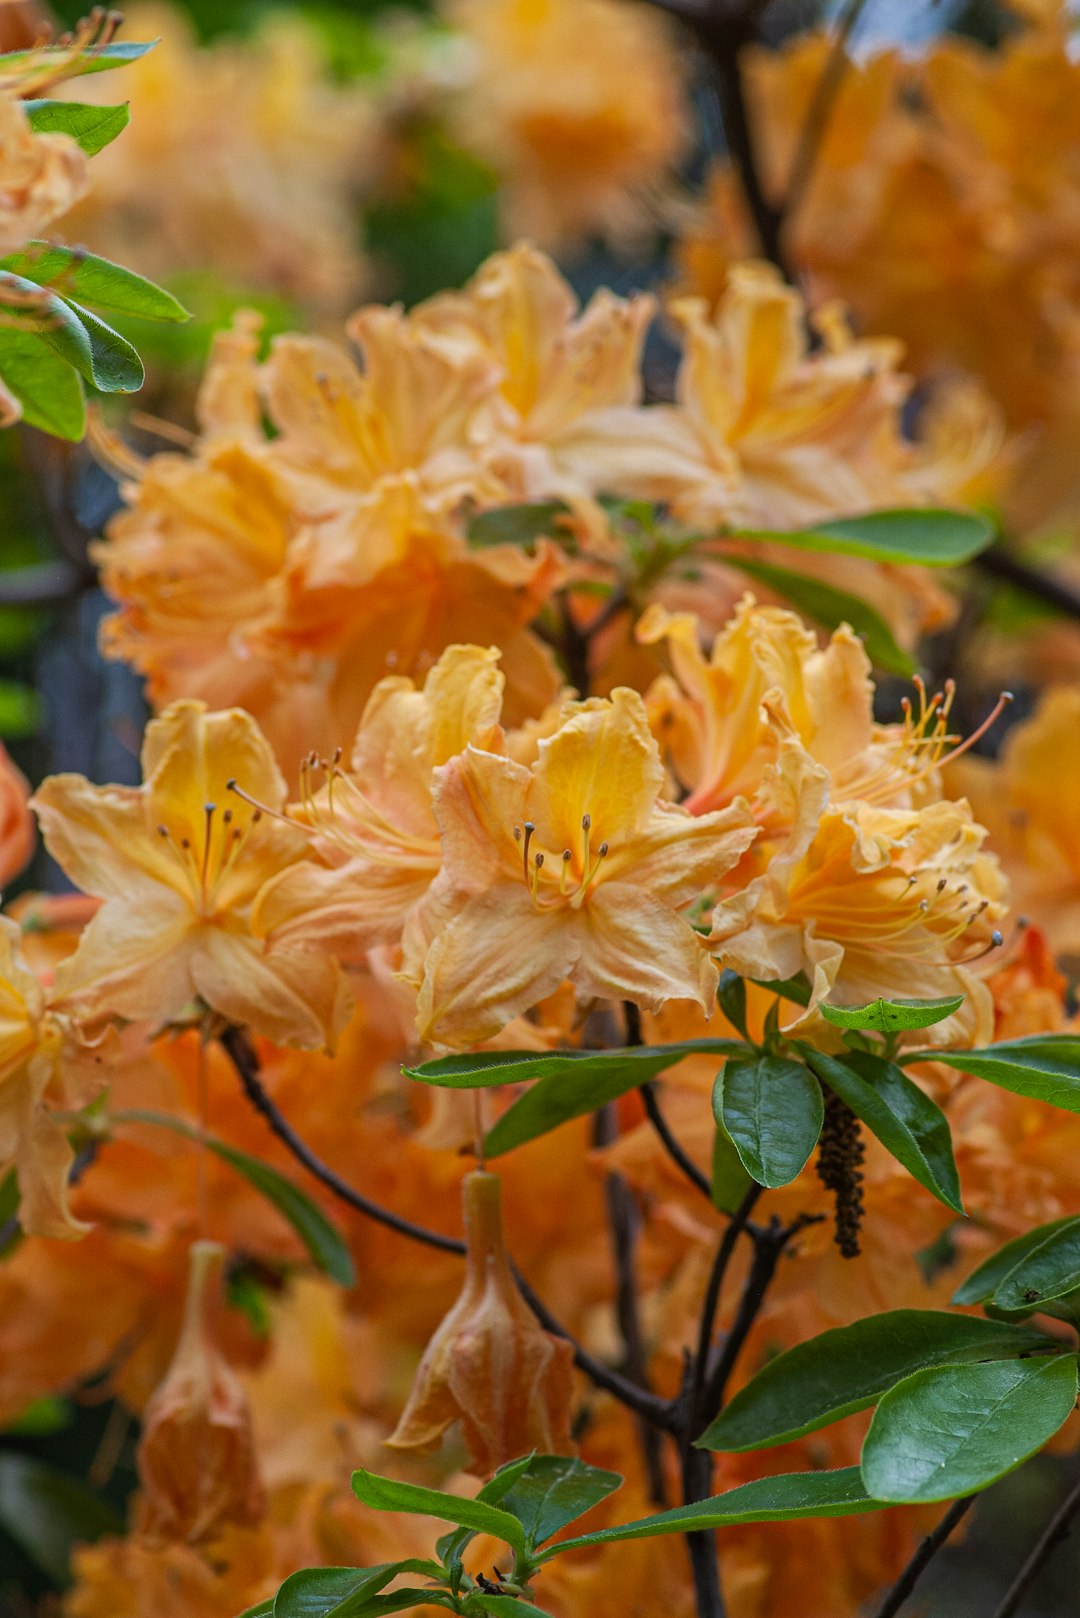 orange petaled flowers close-up photography